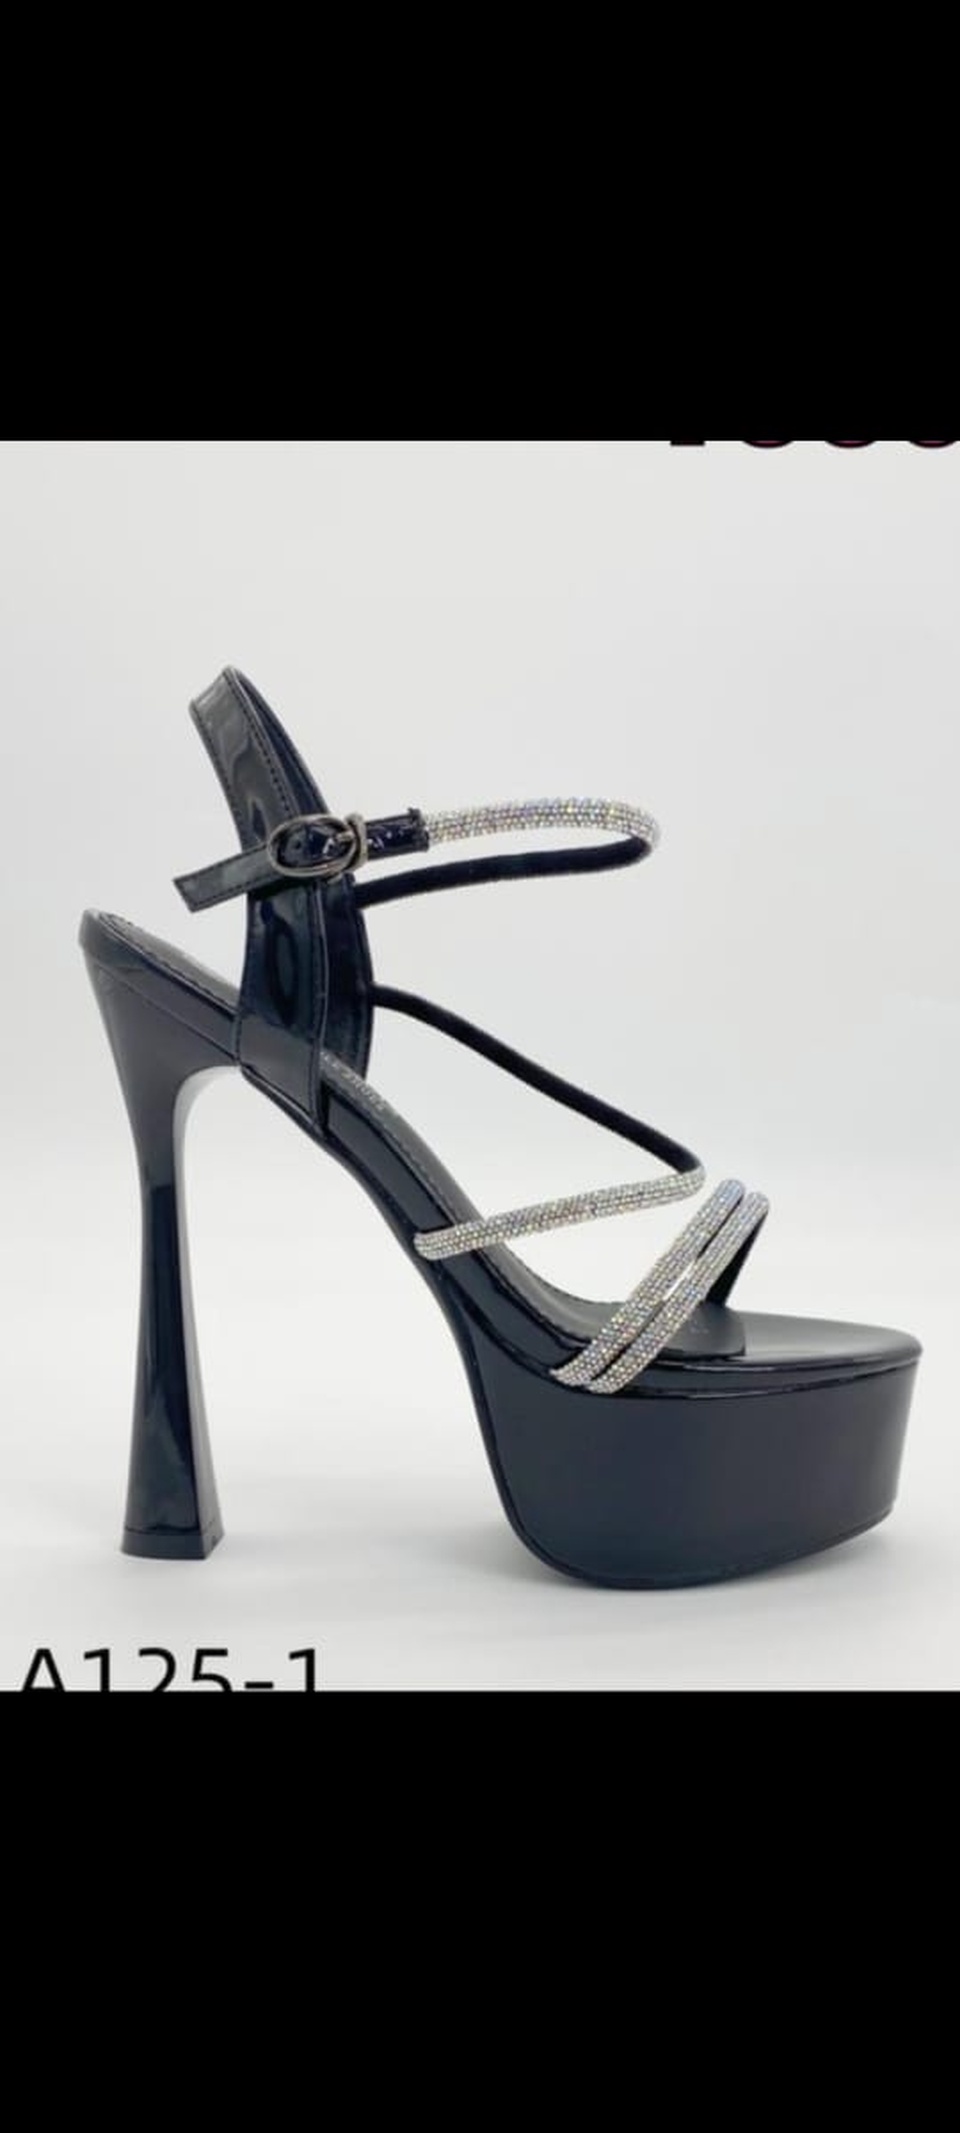 Босоножки на высоком каблуке и пратформе черный - 3 500 ₽, заказать онлайн.